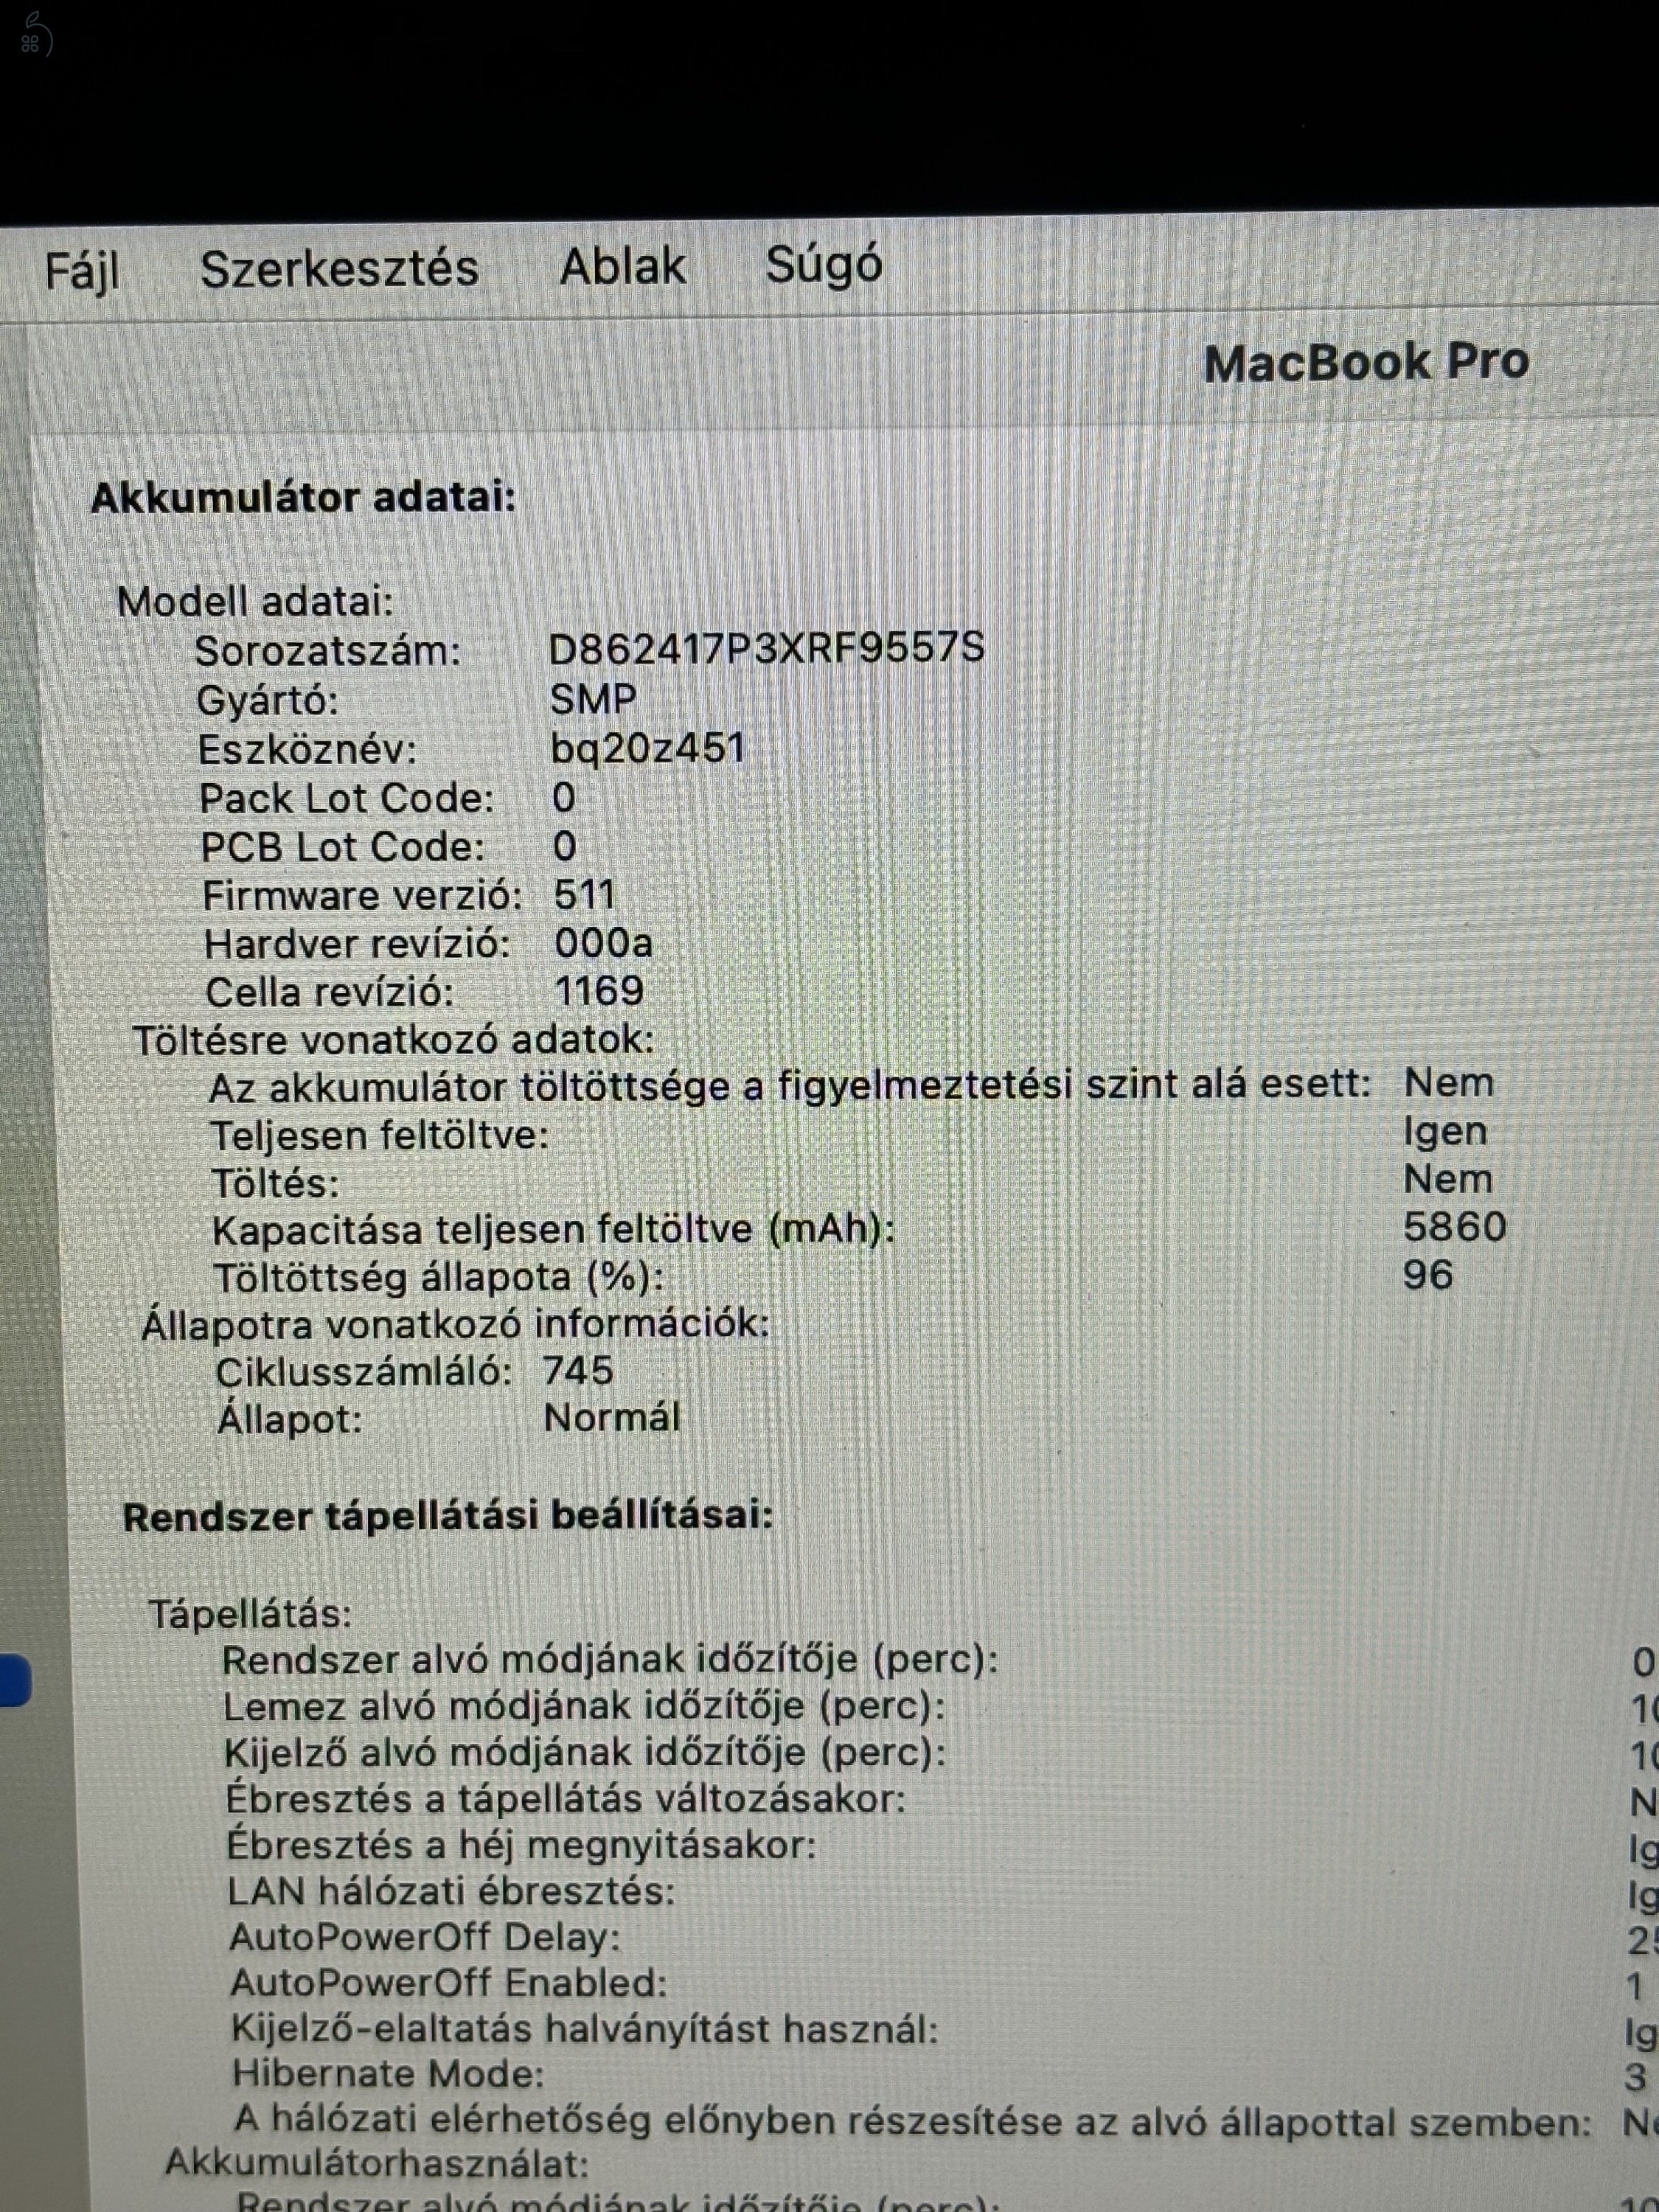 Macbook pro 13